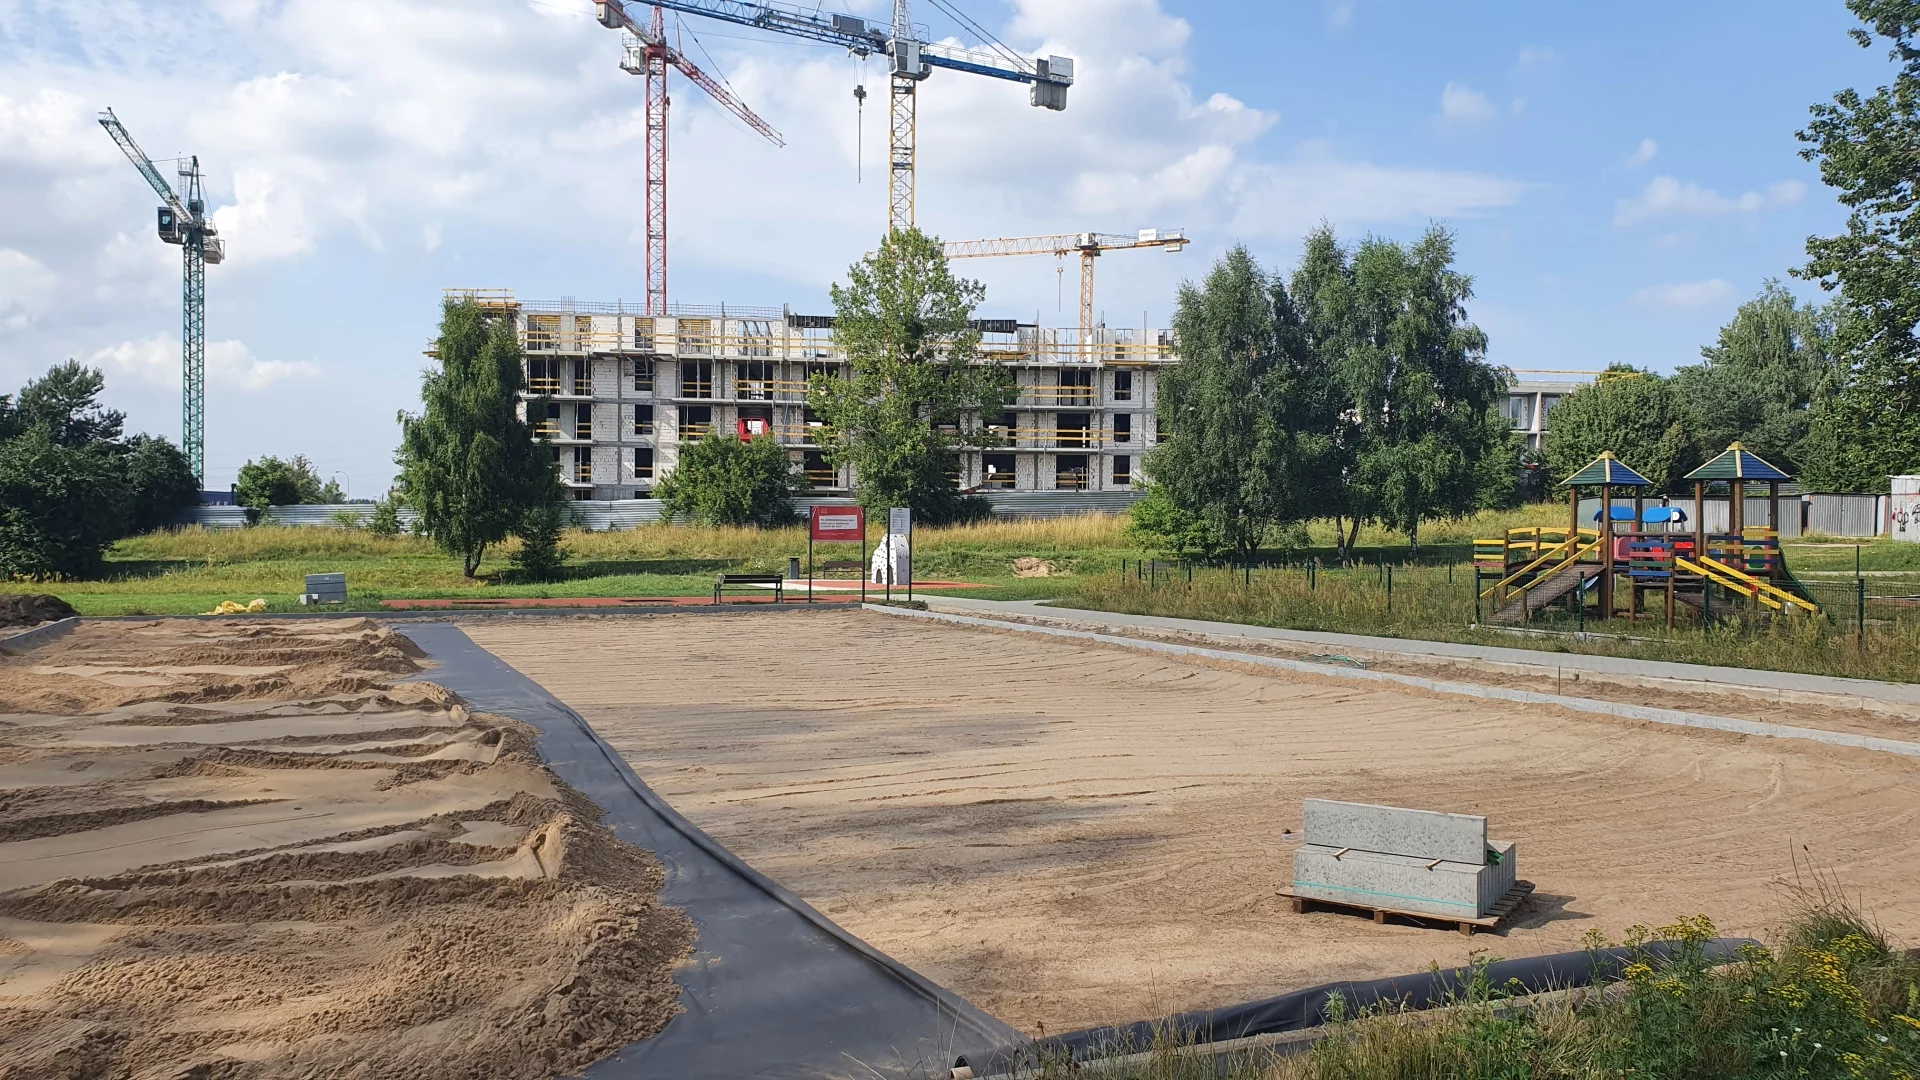 Boisko wielofunkcyjne w Gdańsku Kokoszkach - prace budowlane już się rozpoczęły